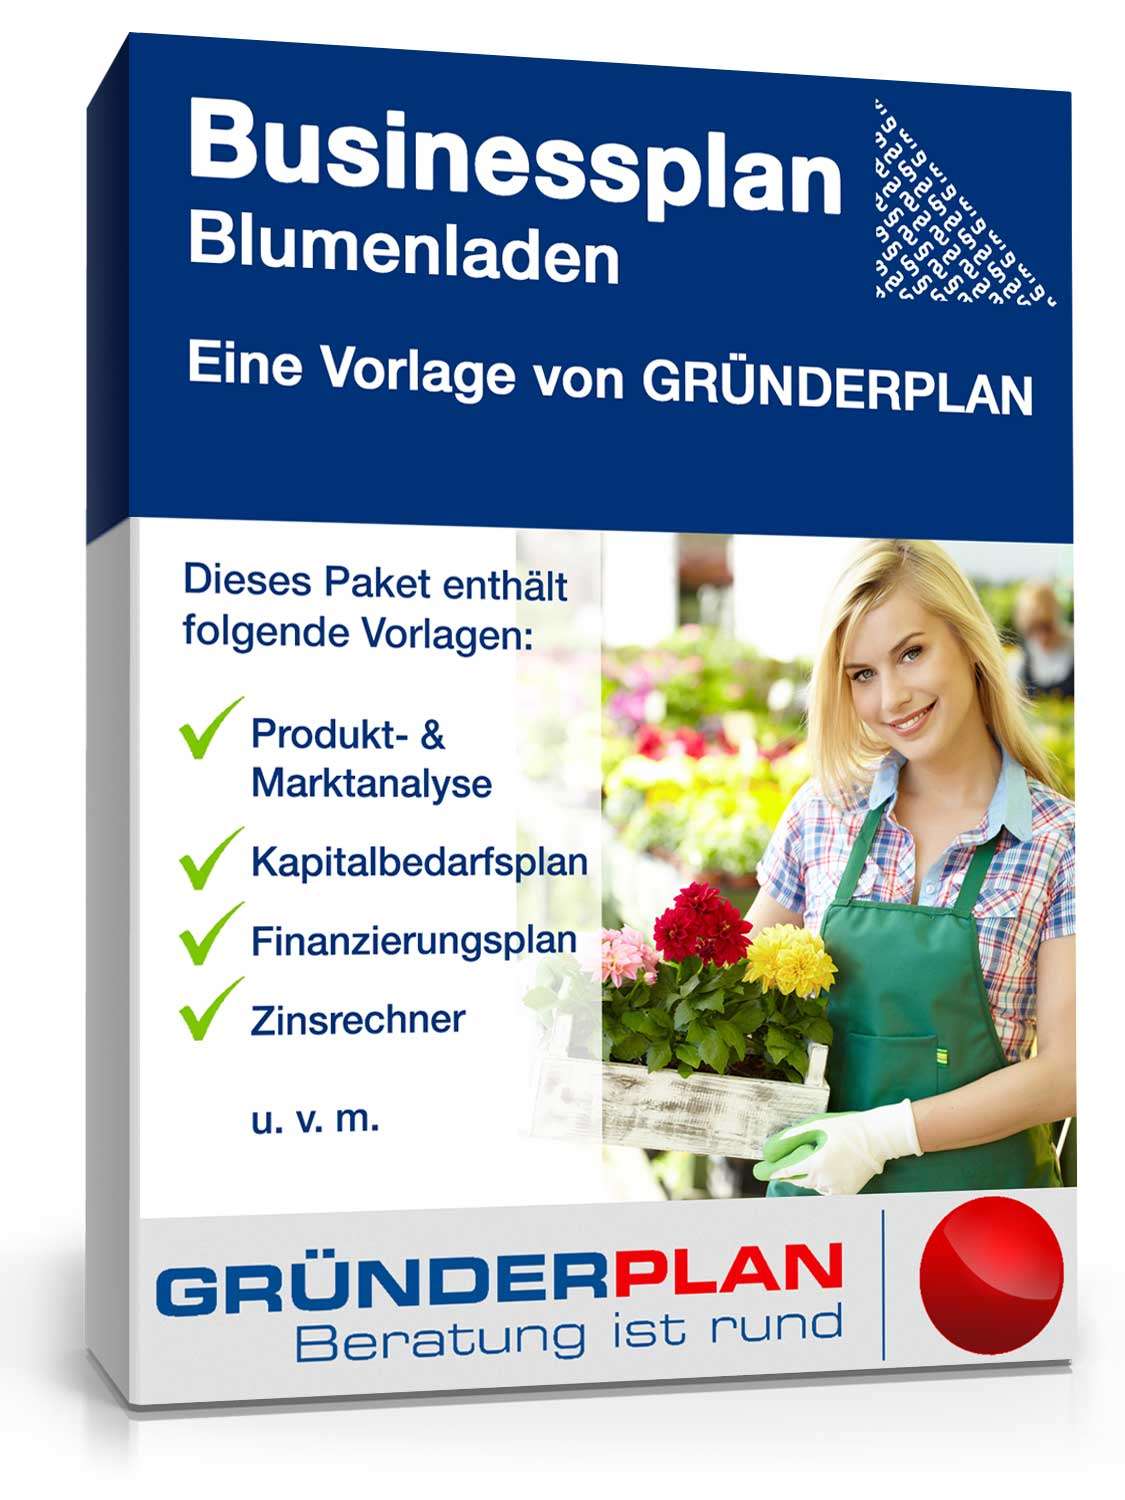 Hauptbild des Produkts: Businessplan Blumenladen von Gründerplan